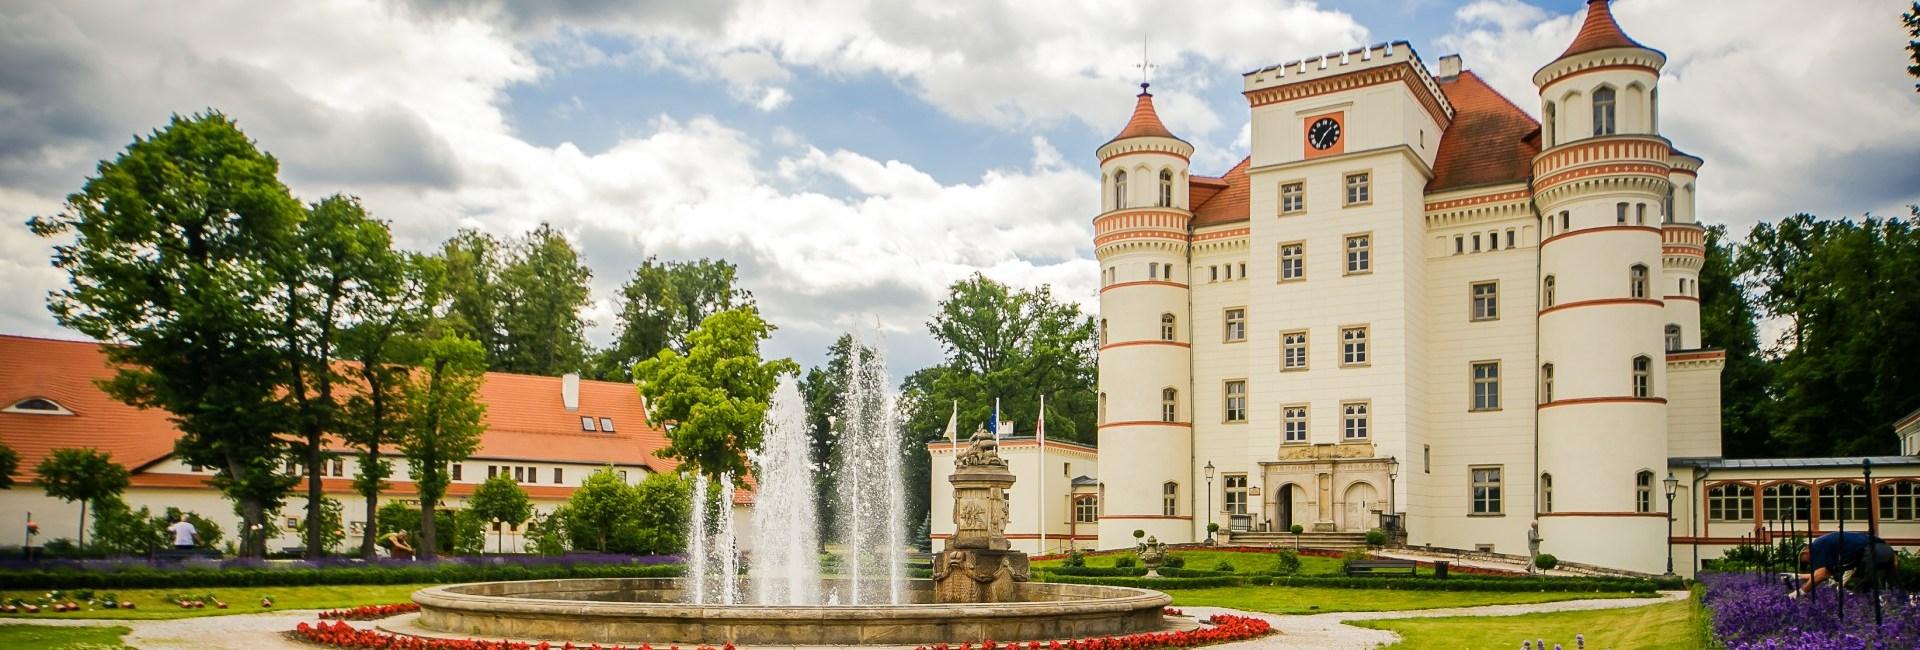 Wojanów Palace in Lower Silesia